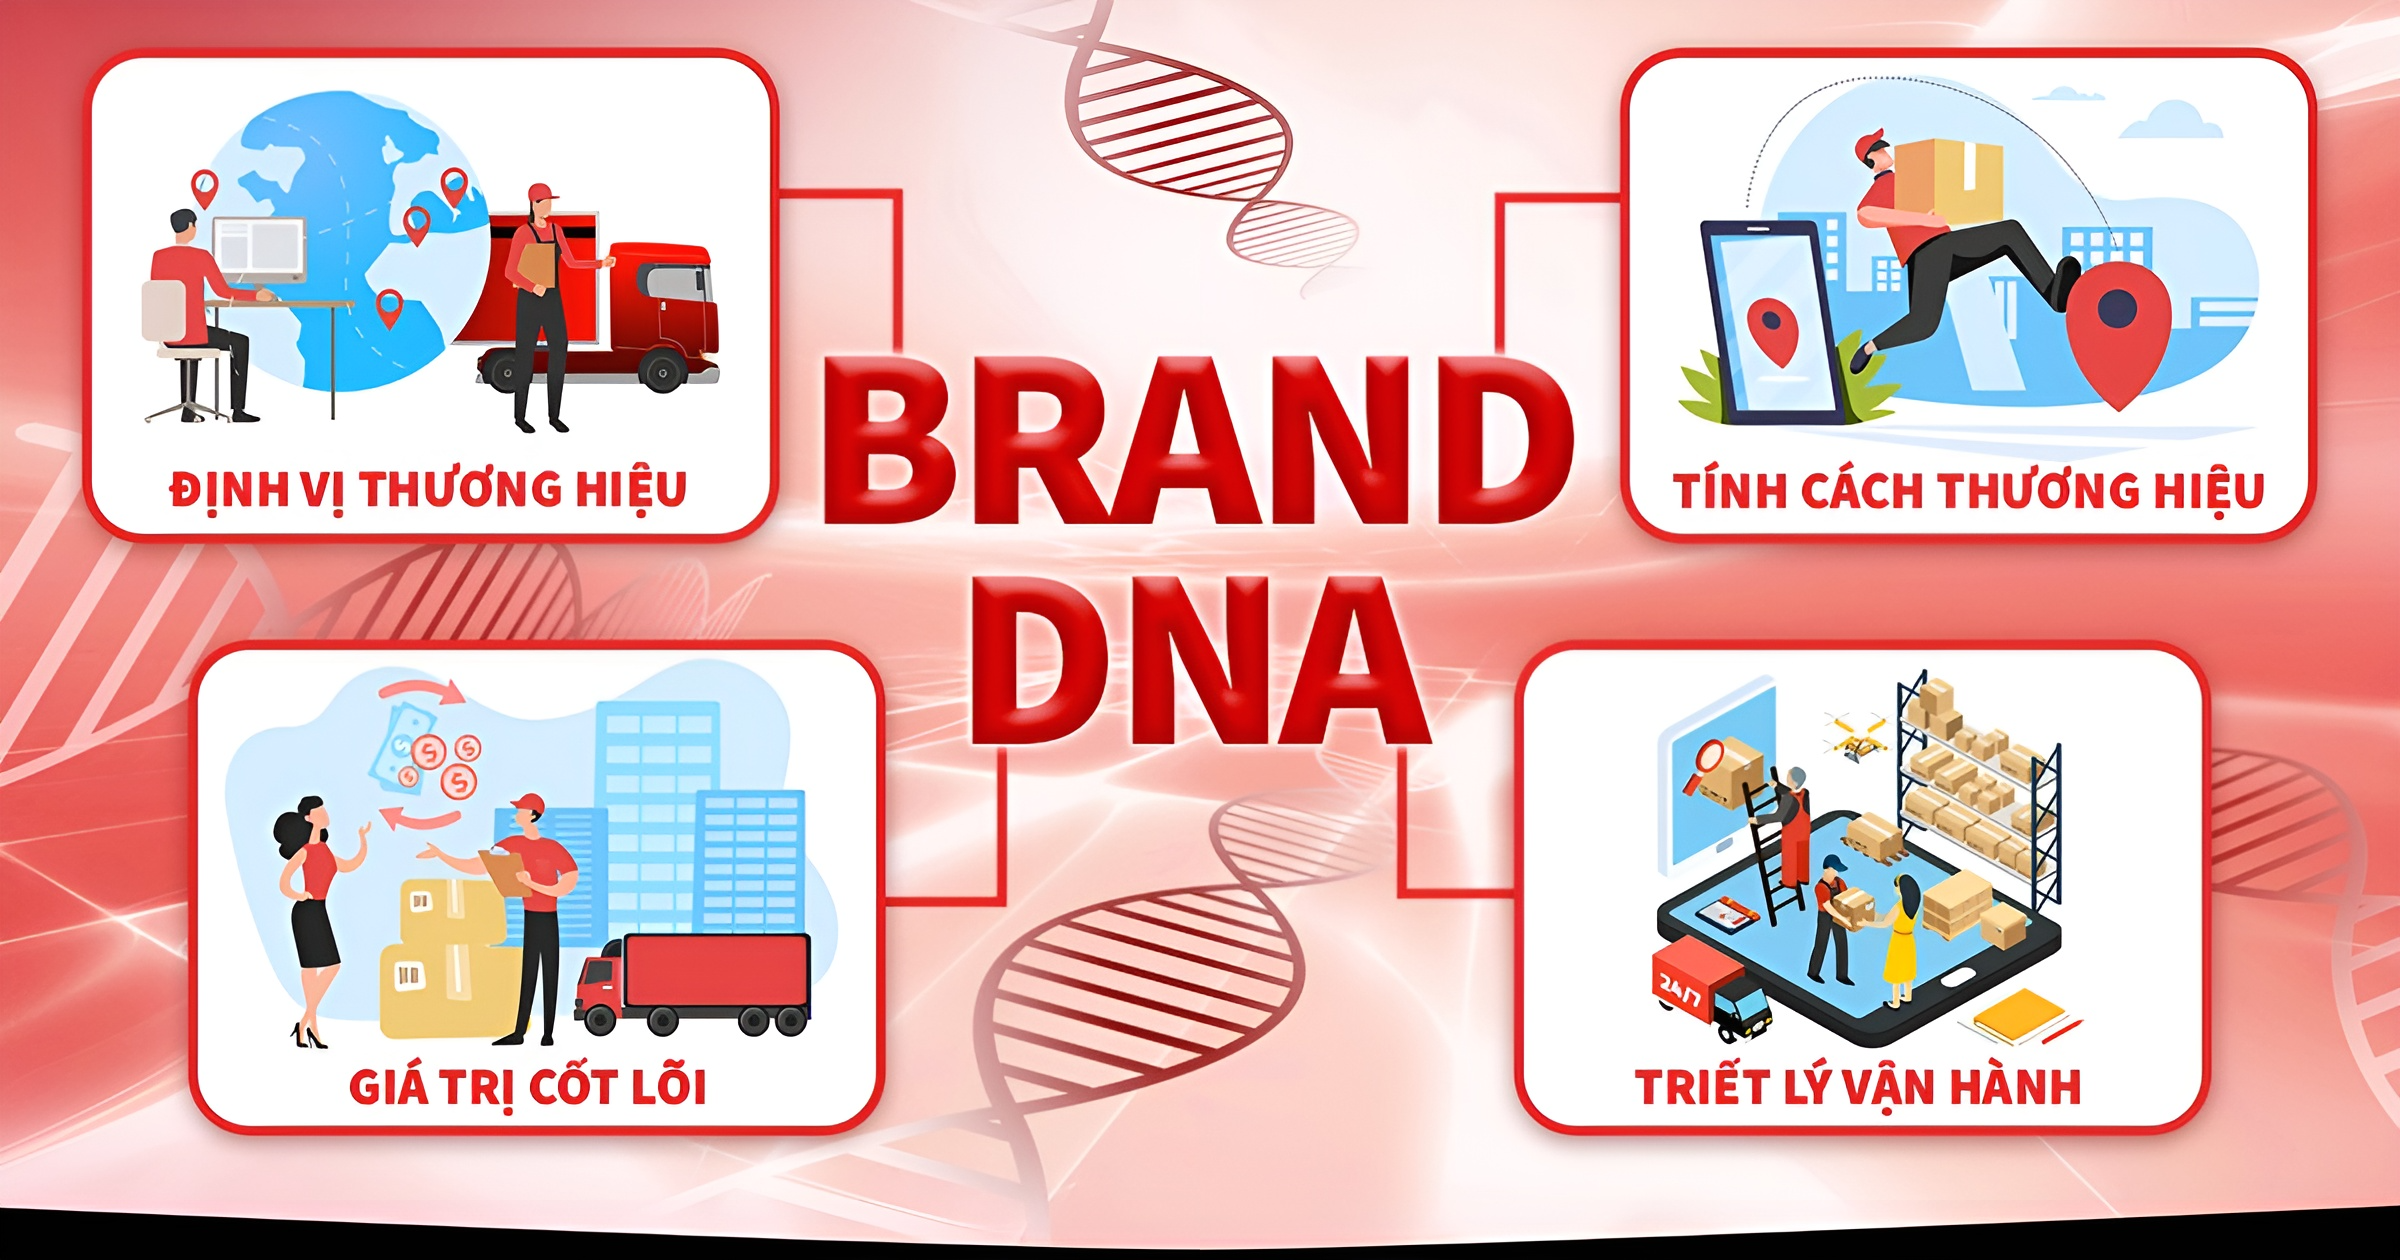 Thương hiệu chọn hình thức thể hiện như thế nào để triển khai Brand DNA hiệu quả?